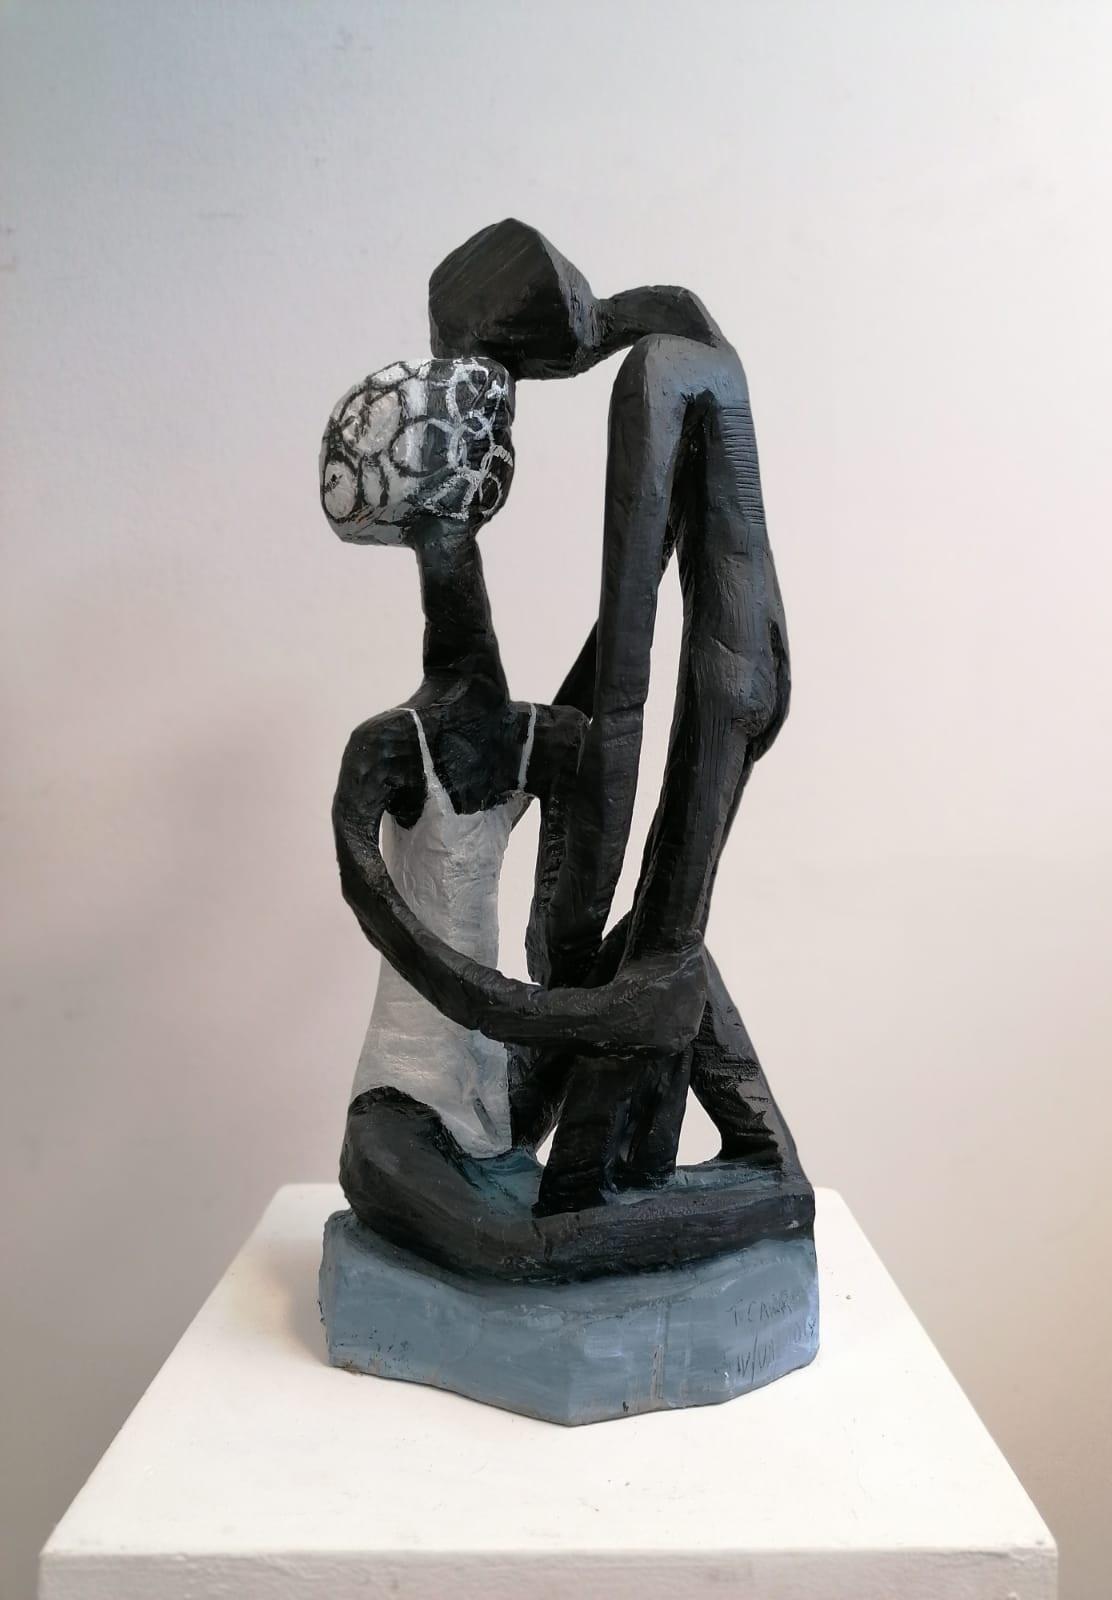 Terence Carr, Der Kuss (Ansicht 1), 2019, Aluminium, Auflage 7 + 1 e.a., 75 cm x 30 cm x 33 cm, Preis auf Anfrage, SüdWestGalerie